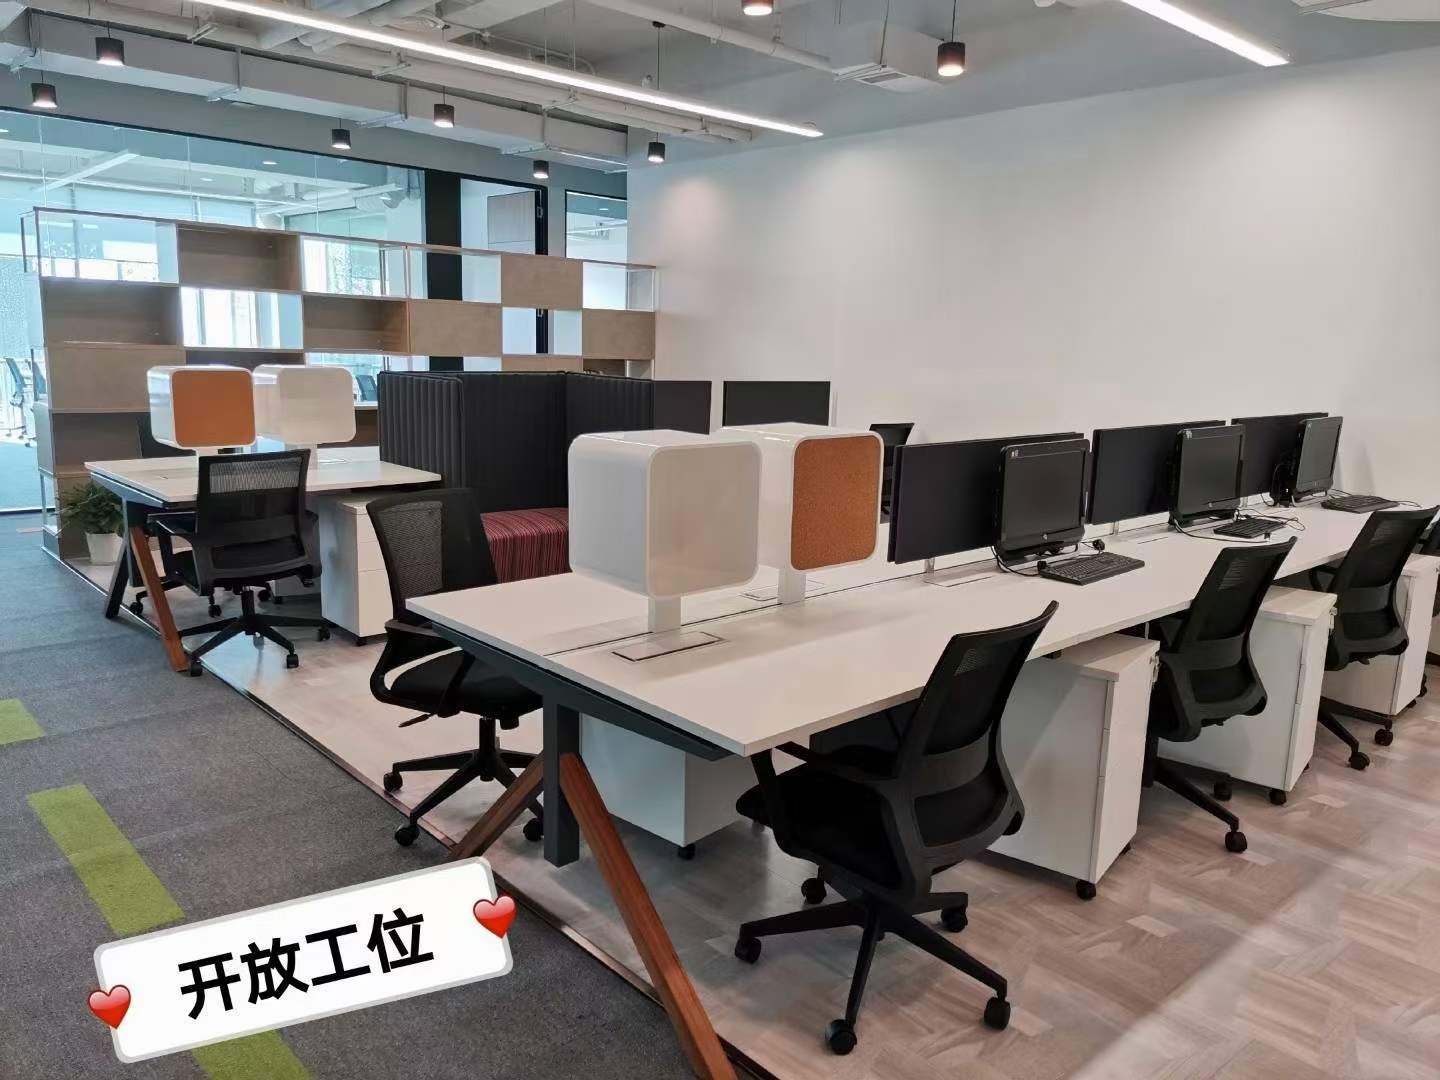 9号线合川路站的华鑫中心联合办公空间出租1人间开放式工位